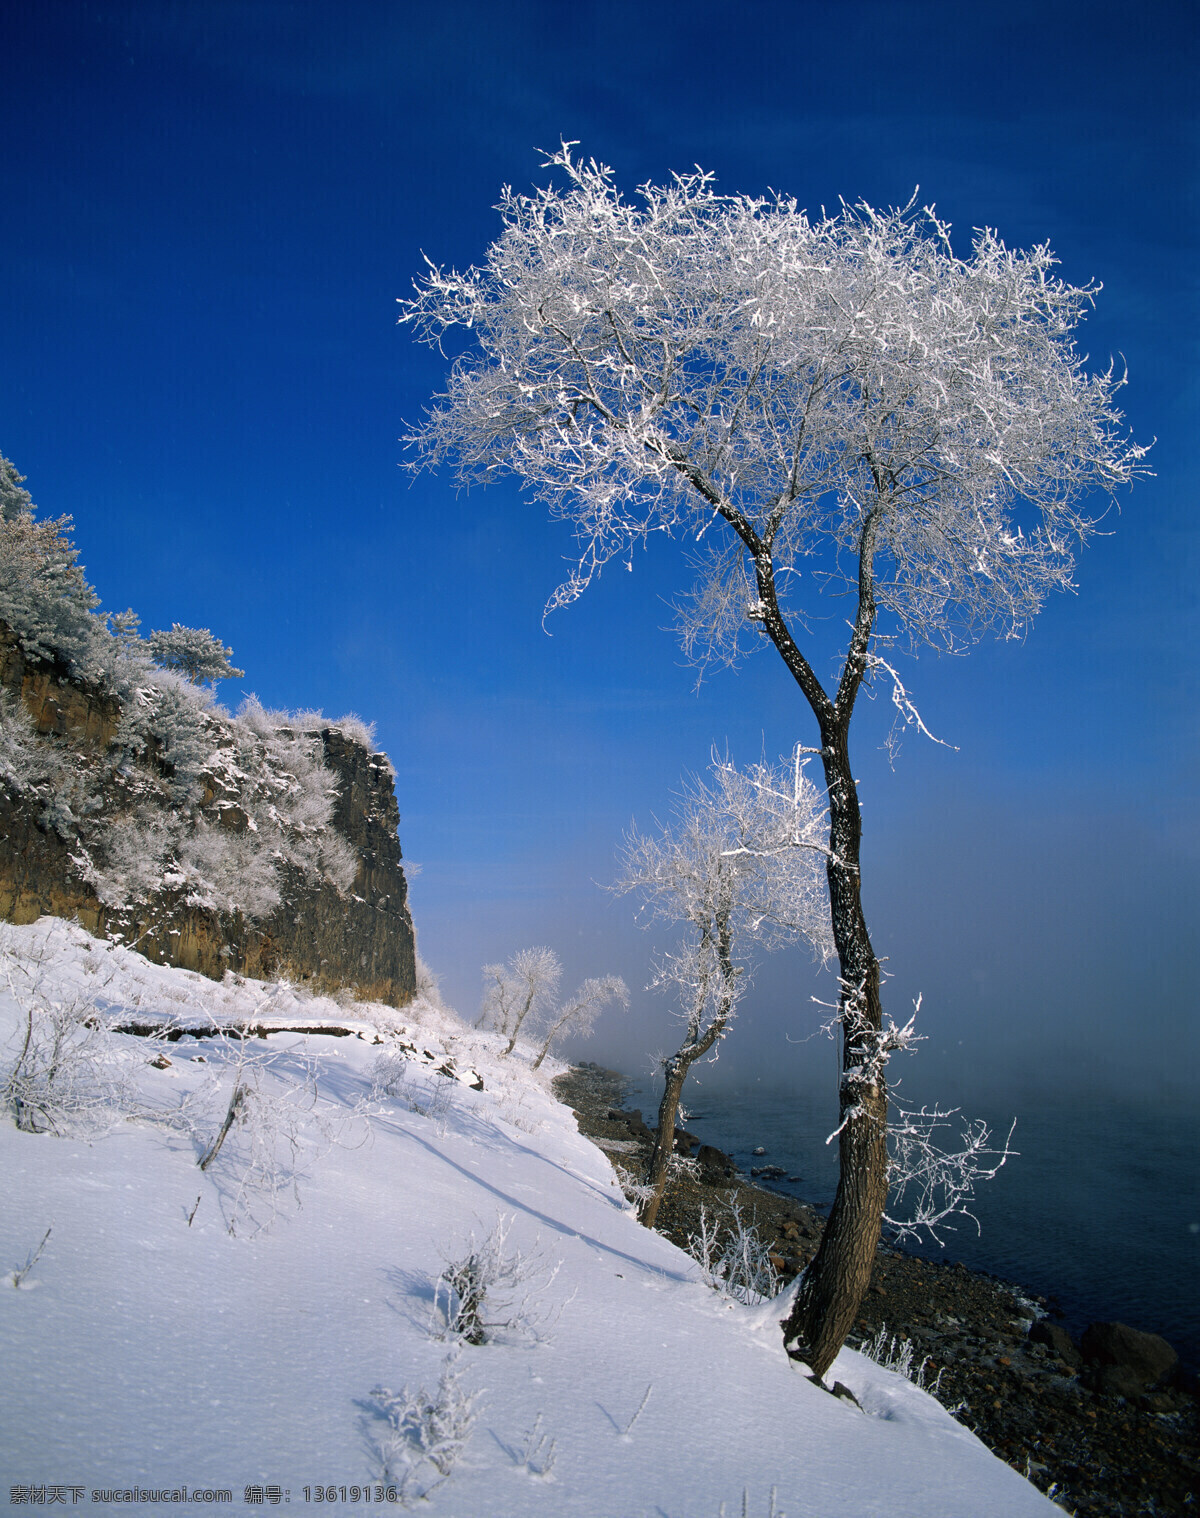 雪景摄影 大自然 自然风景 美丽风景 美景 景色 风景摄影 旅游景区 旅游风景 旅游奇观 雪地 雪景 雪山 冬天风景 自然景观 蓝色